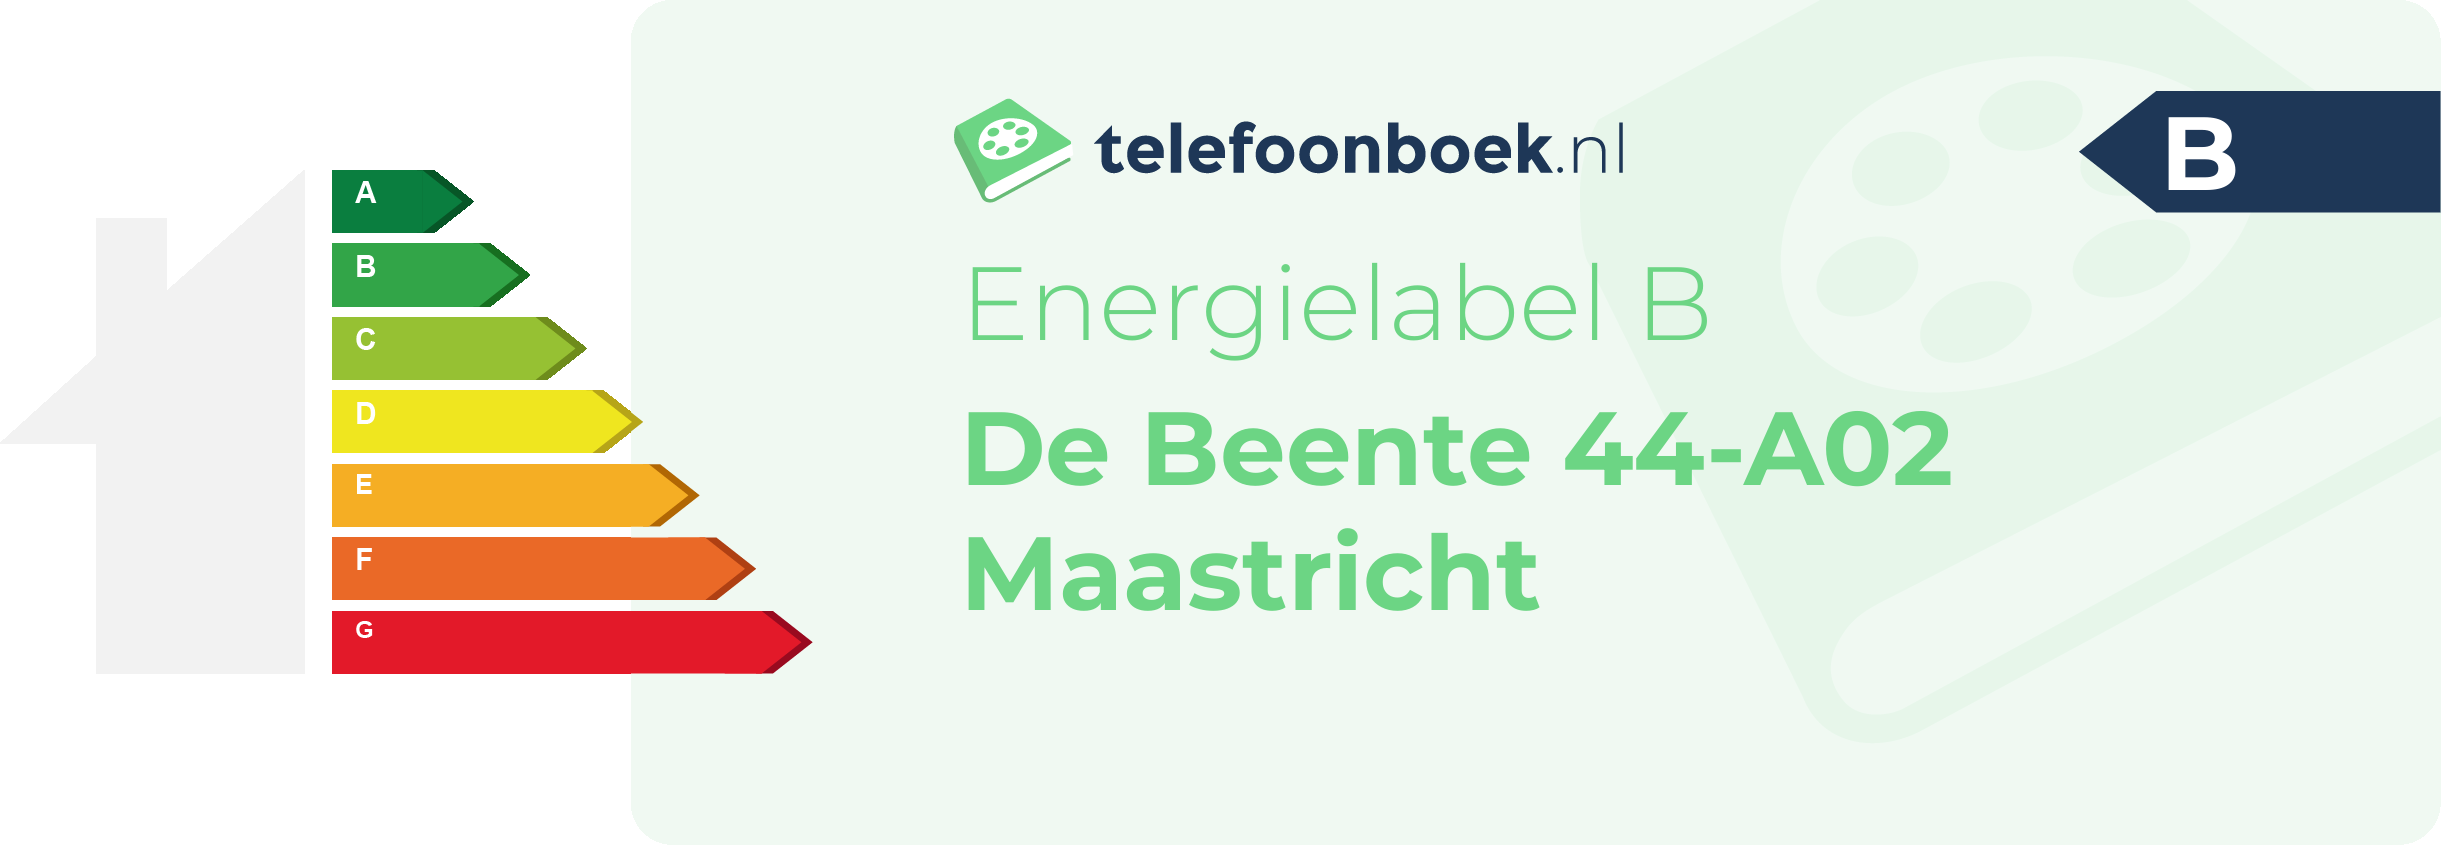 Energielabel De Beente 44-A02 Maastricht